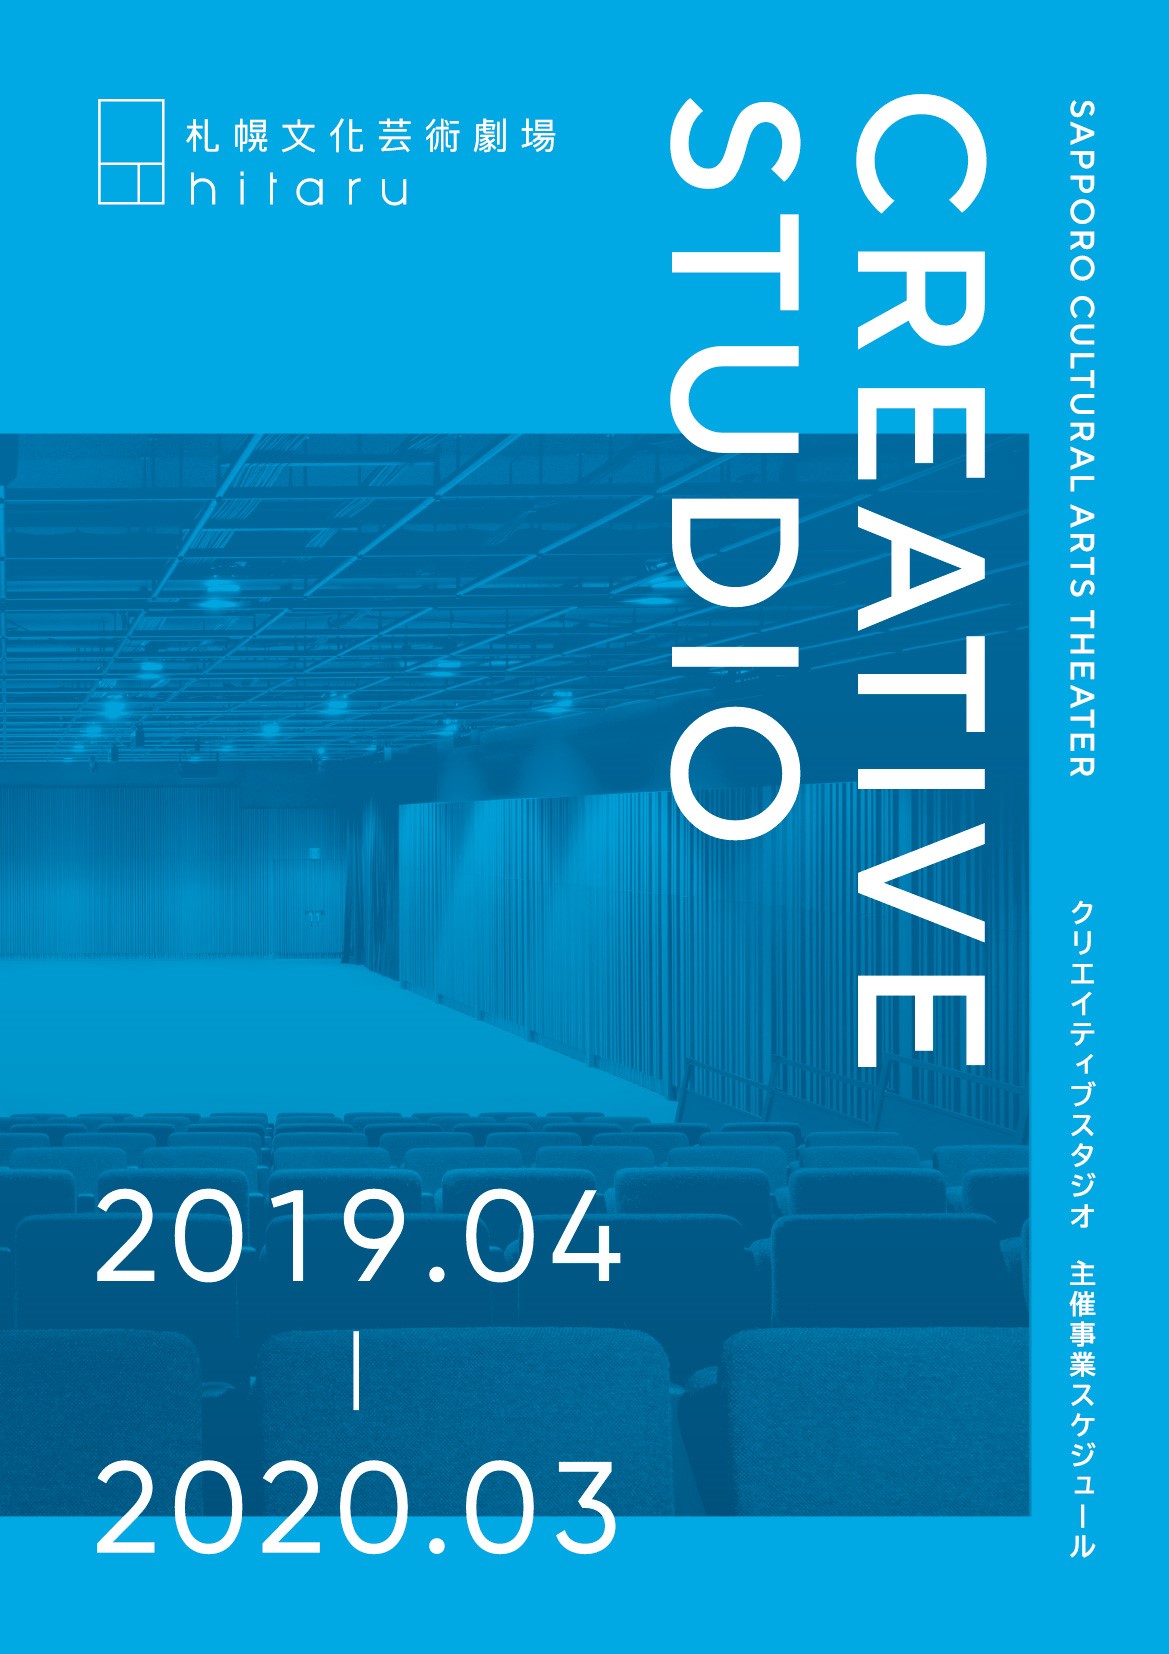 クリエイティブスタジオ2019年4月 - 2020年3月 主催事業スケジュール 追加発表イメージ1枚目